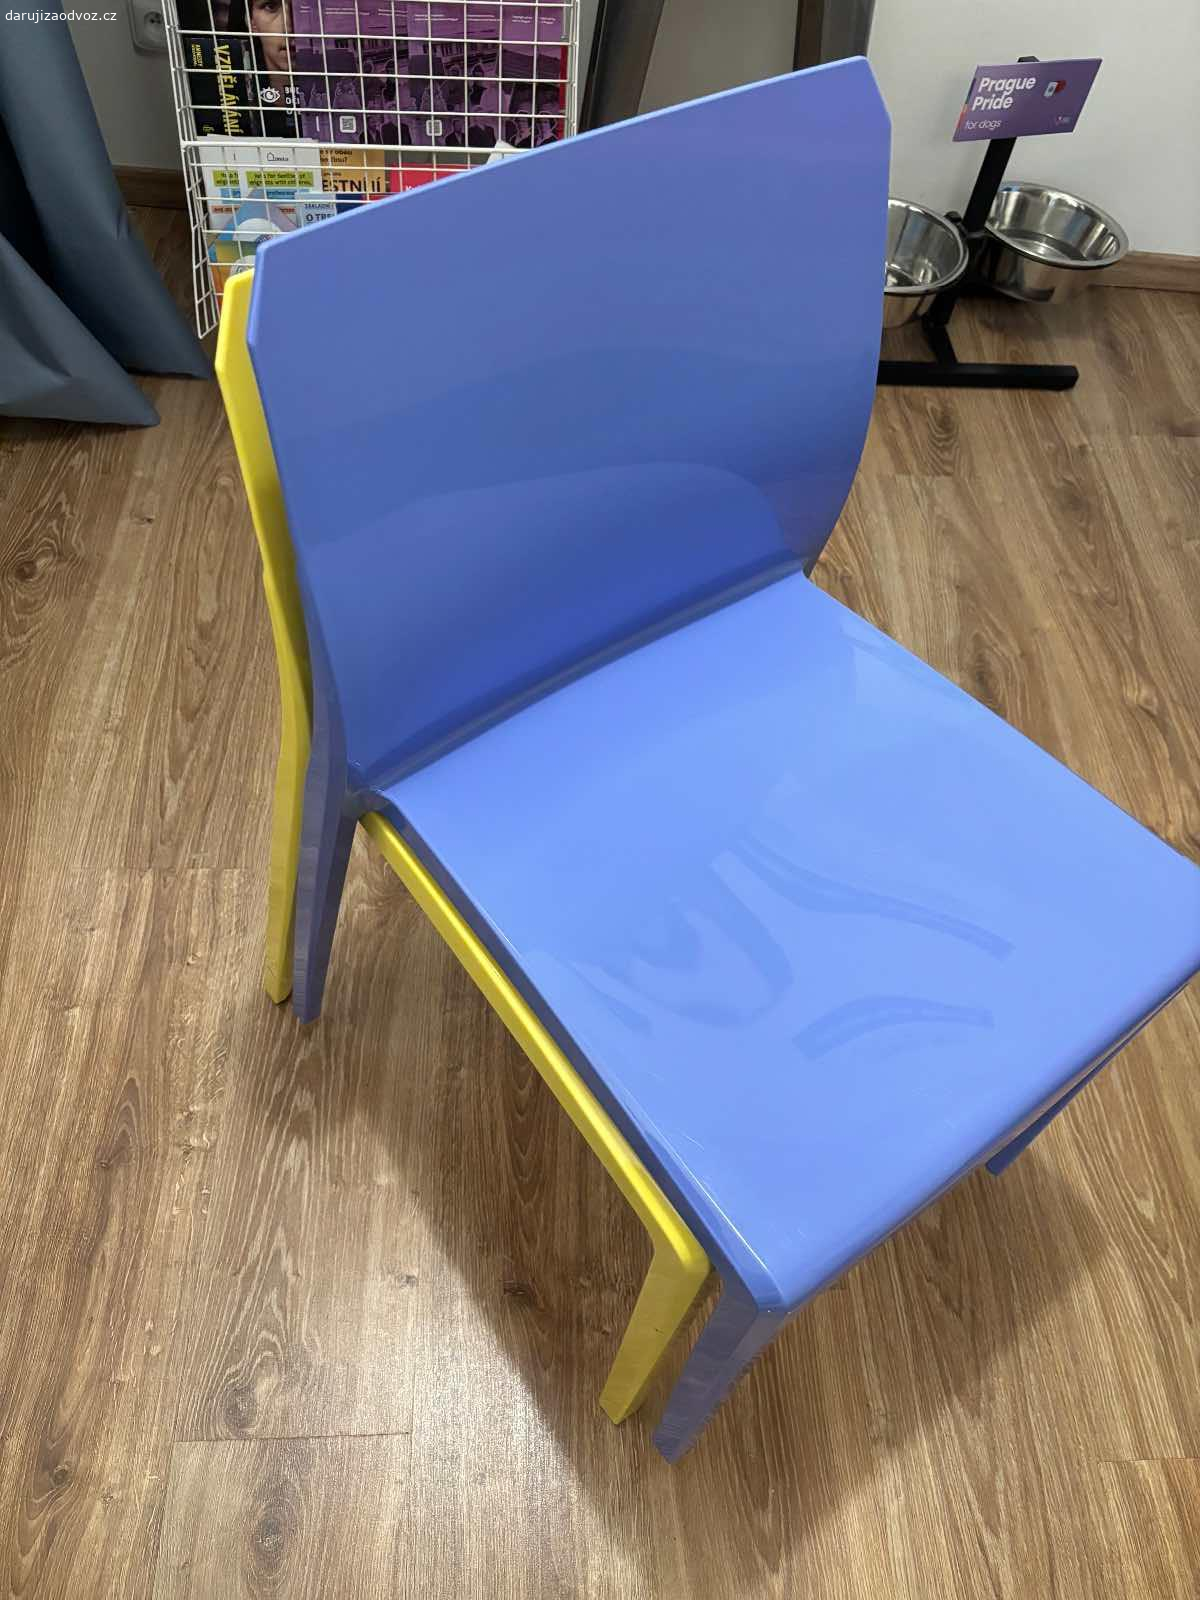 daruji židle. barevné židle - 2ks modrá, 1ks žlutá, 1ks červená
plastové židle, dají se skládat na sebe
za odvoz Praha 1
není podmínkou vzít všechny